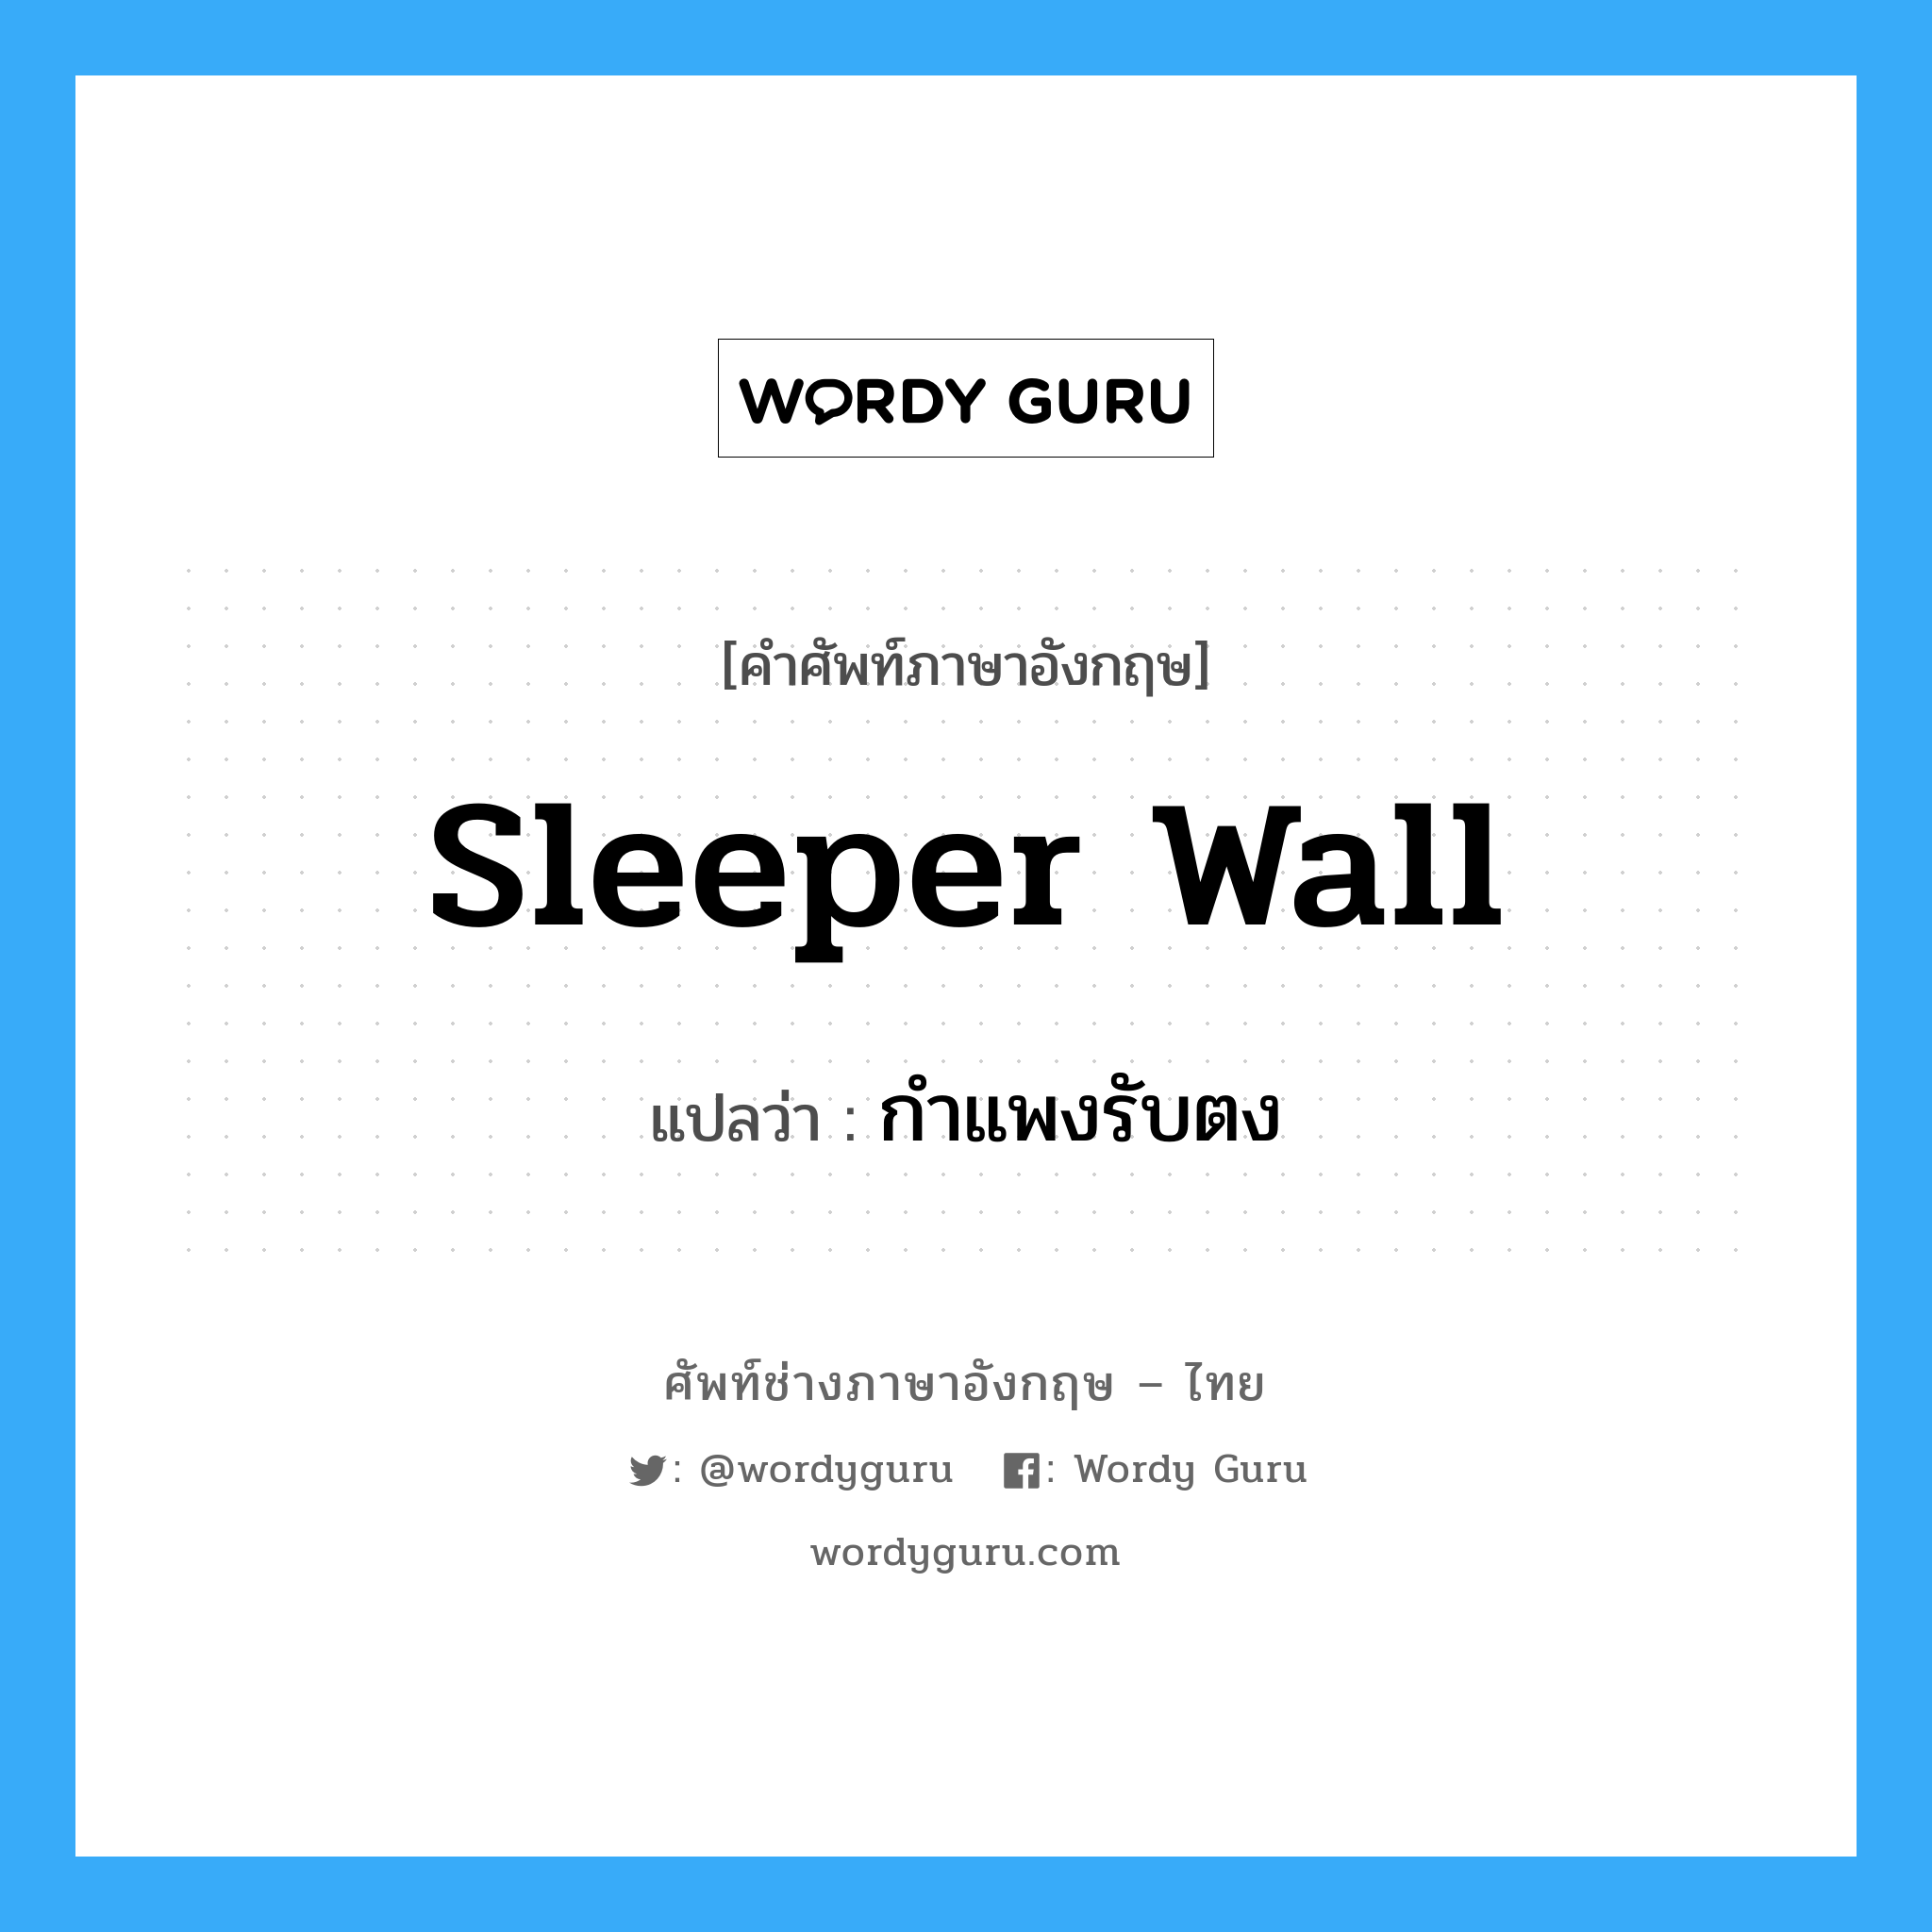 กำแพงรับตง ภาษาอังกฤษ?, คำศัพท์ช่างภาษาอังกฤษ - ไทย กำแพงรับตง คำศัพท์ภาษาอังกฤษ กำแพงรับตง แปลว่า sleeper wall